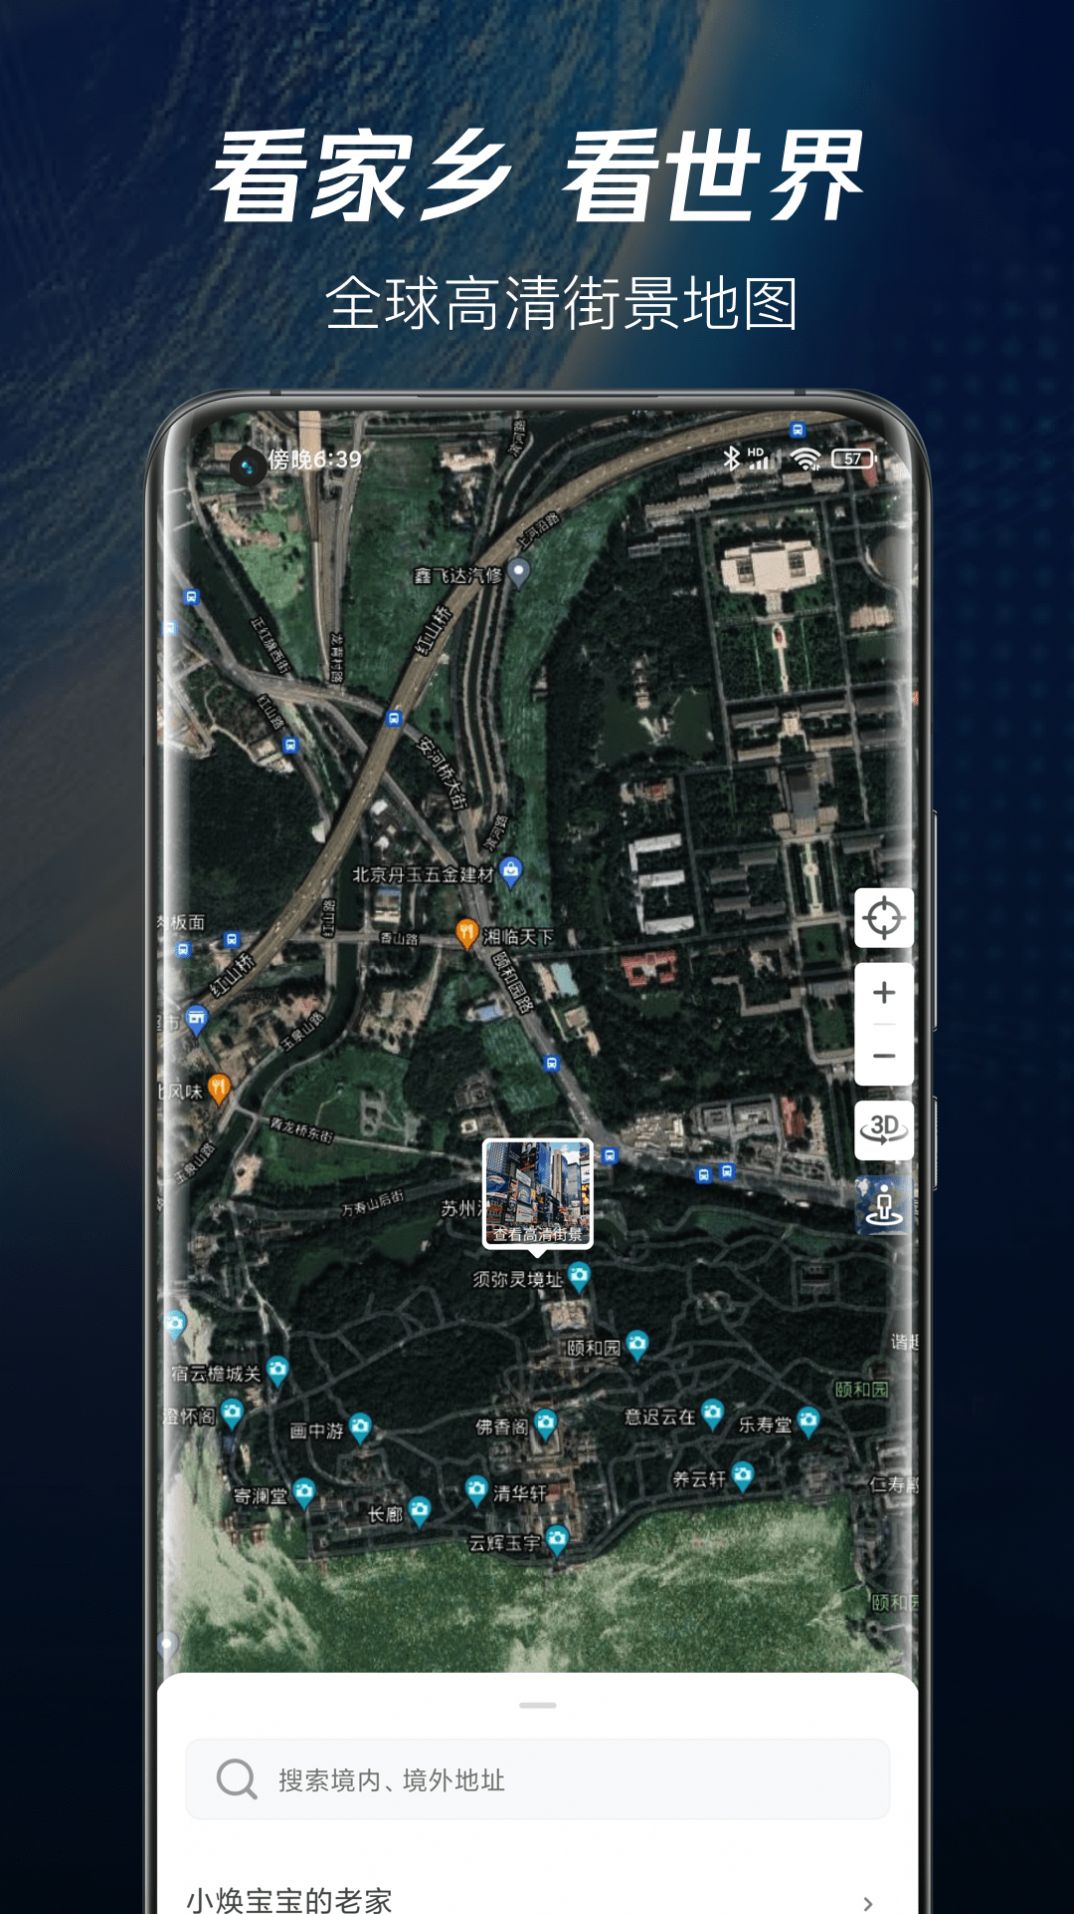 爱看家乡街景下载app安装-爱看家乡街景最新版下载